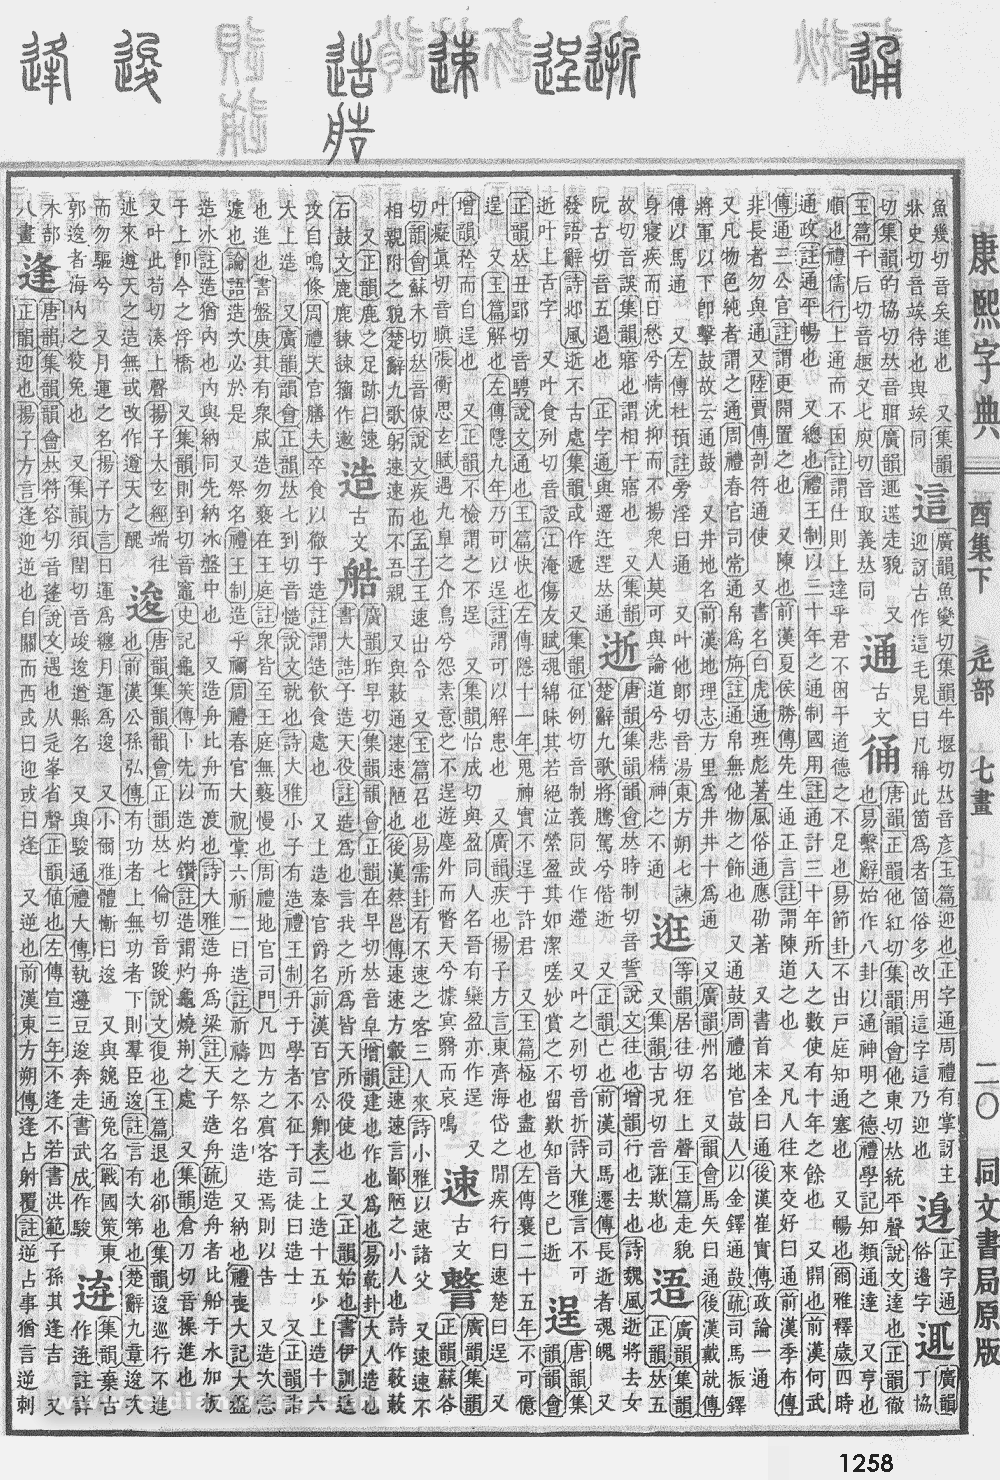 康熙字典掃描版第1258頁